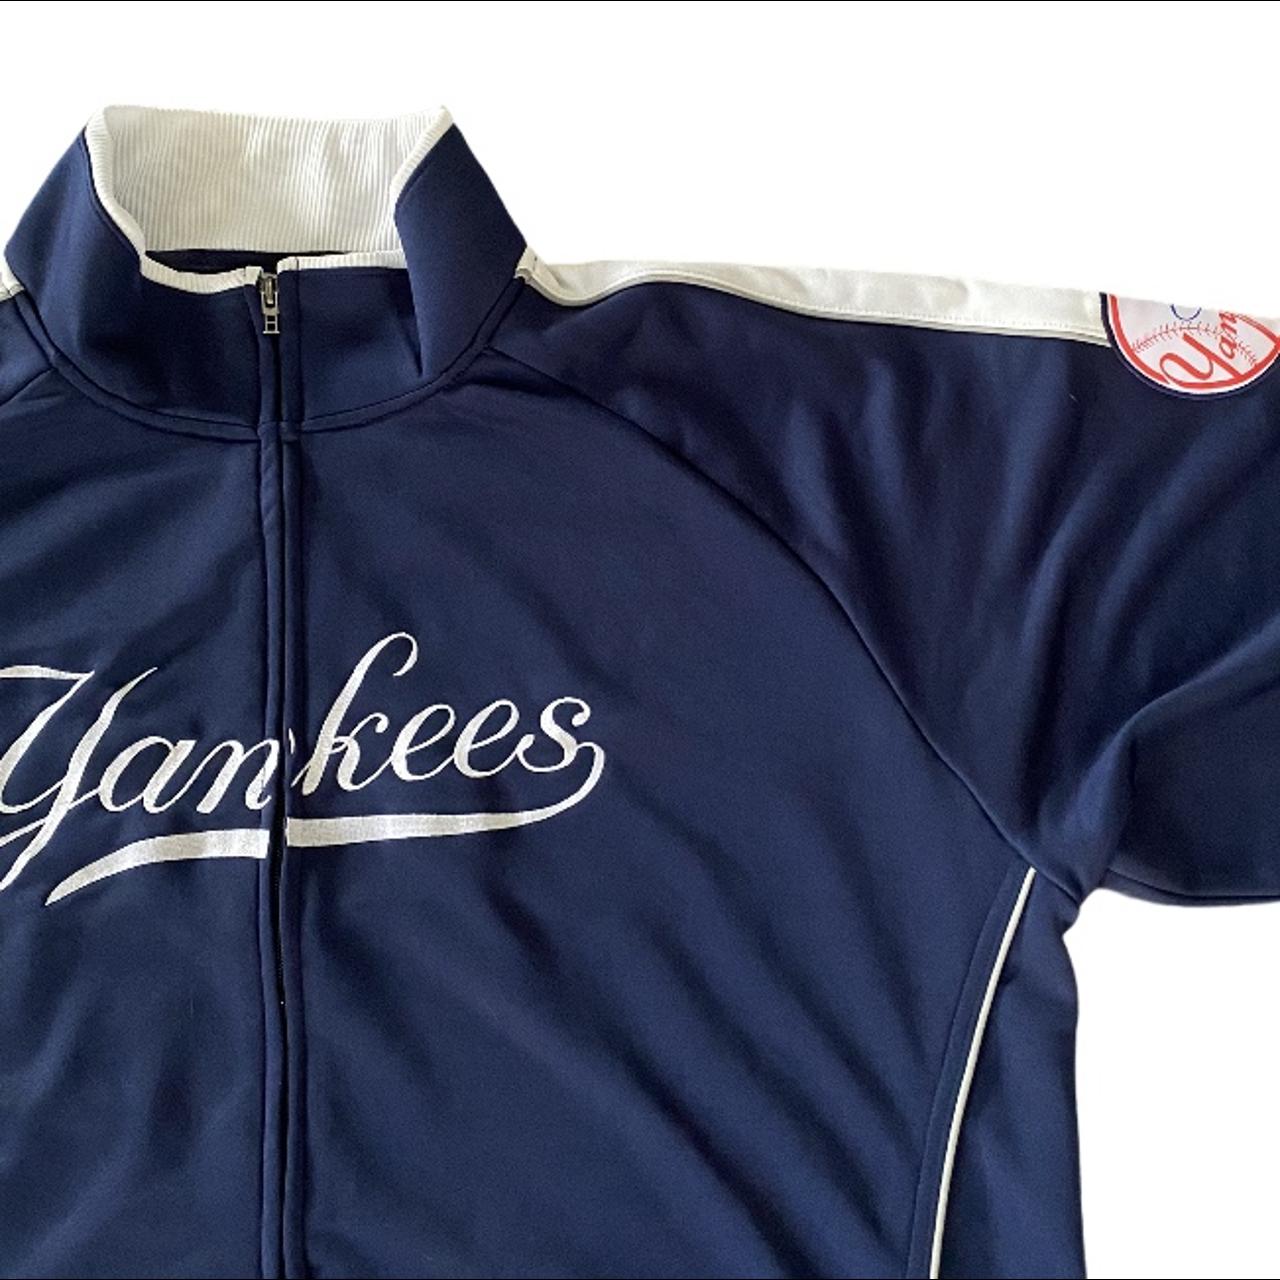 Nike New York Yankees track jacket in navy. - Depop